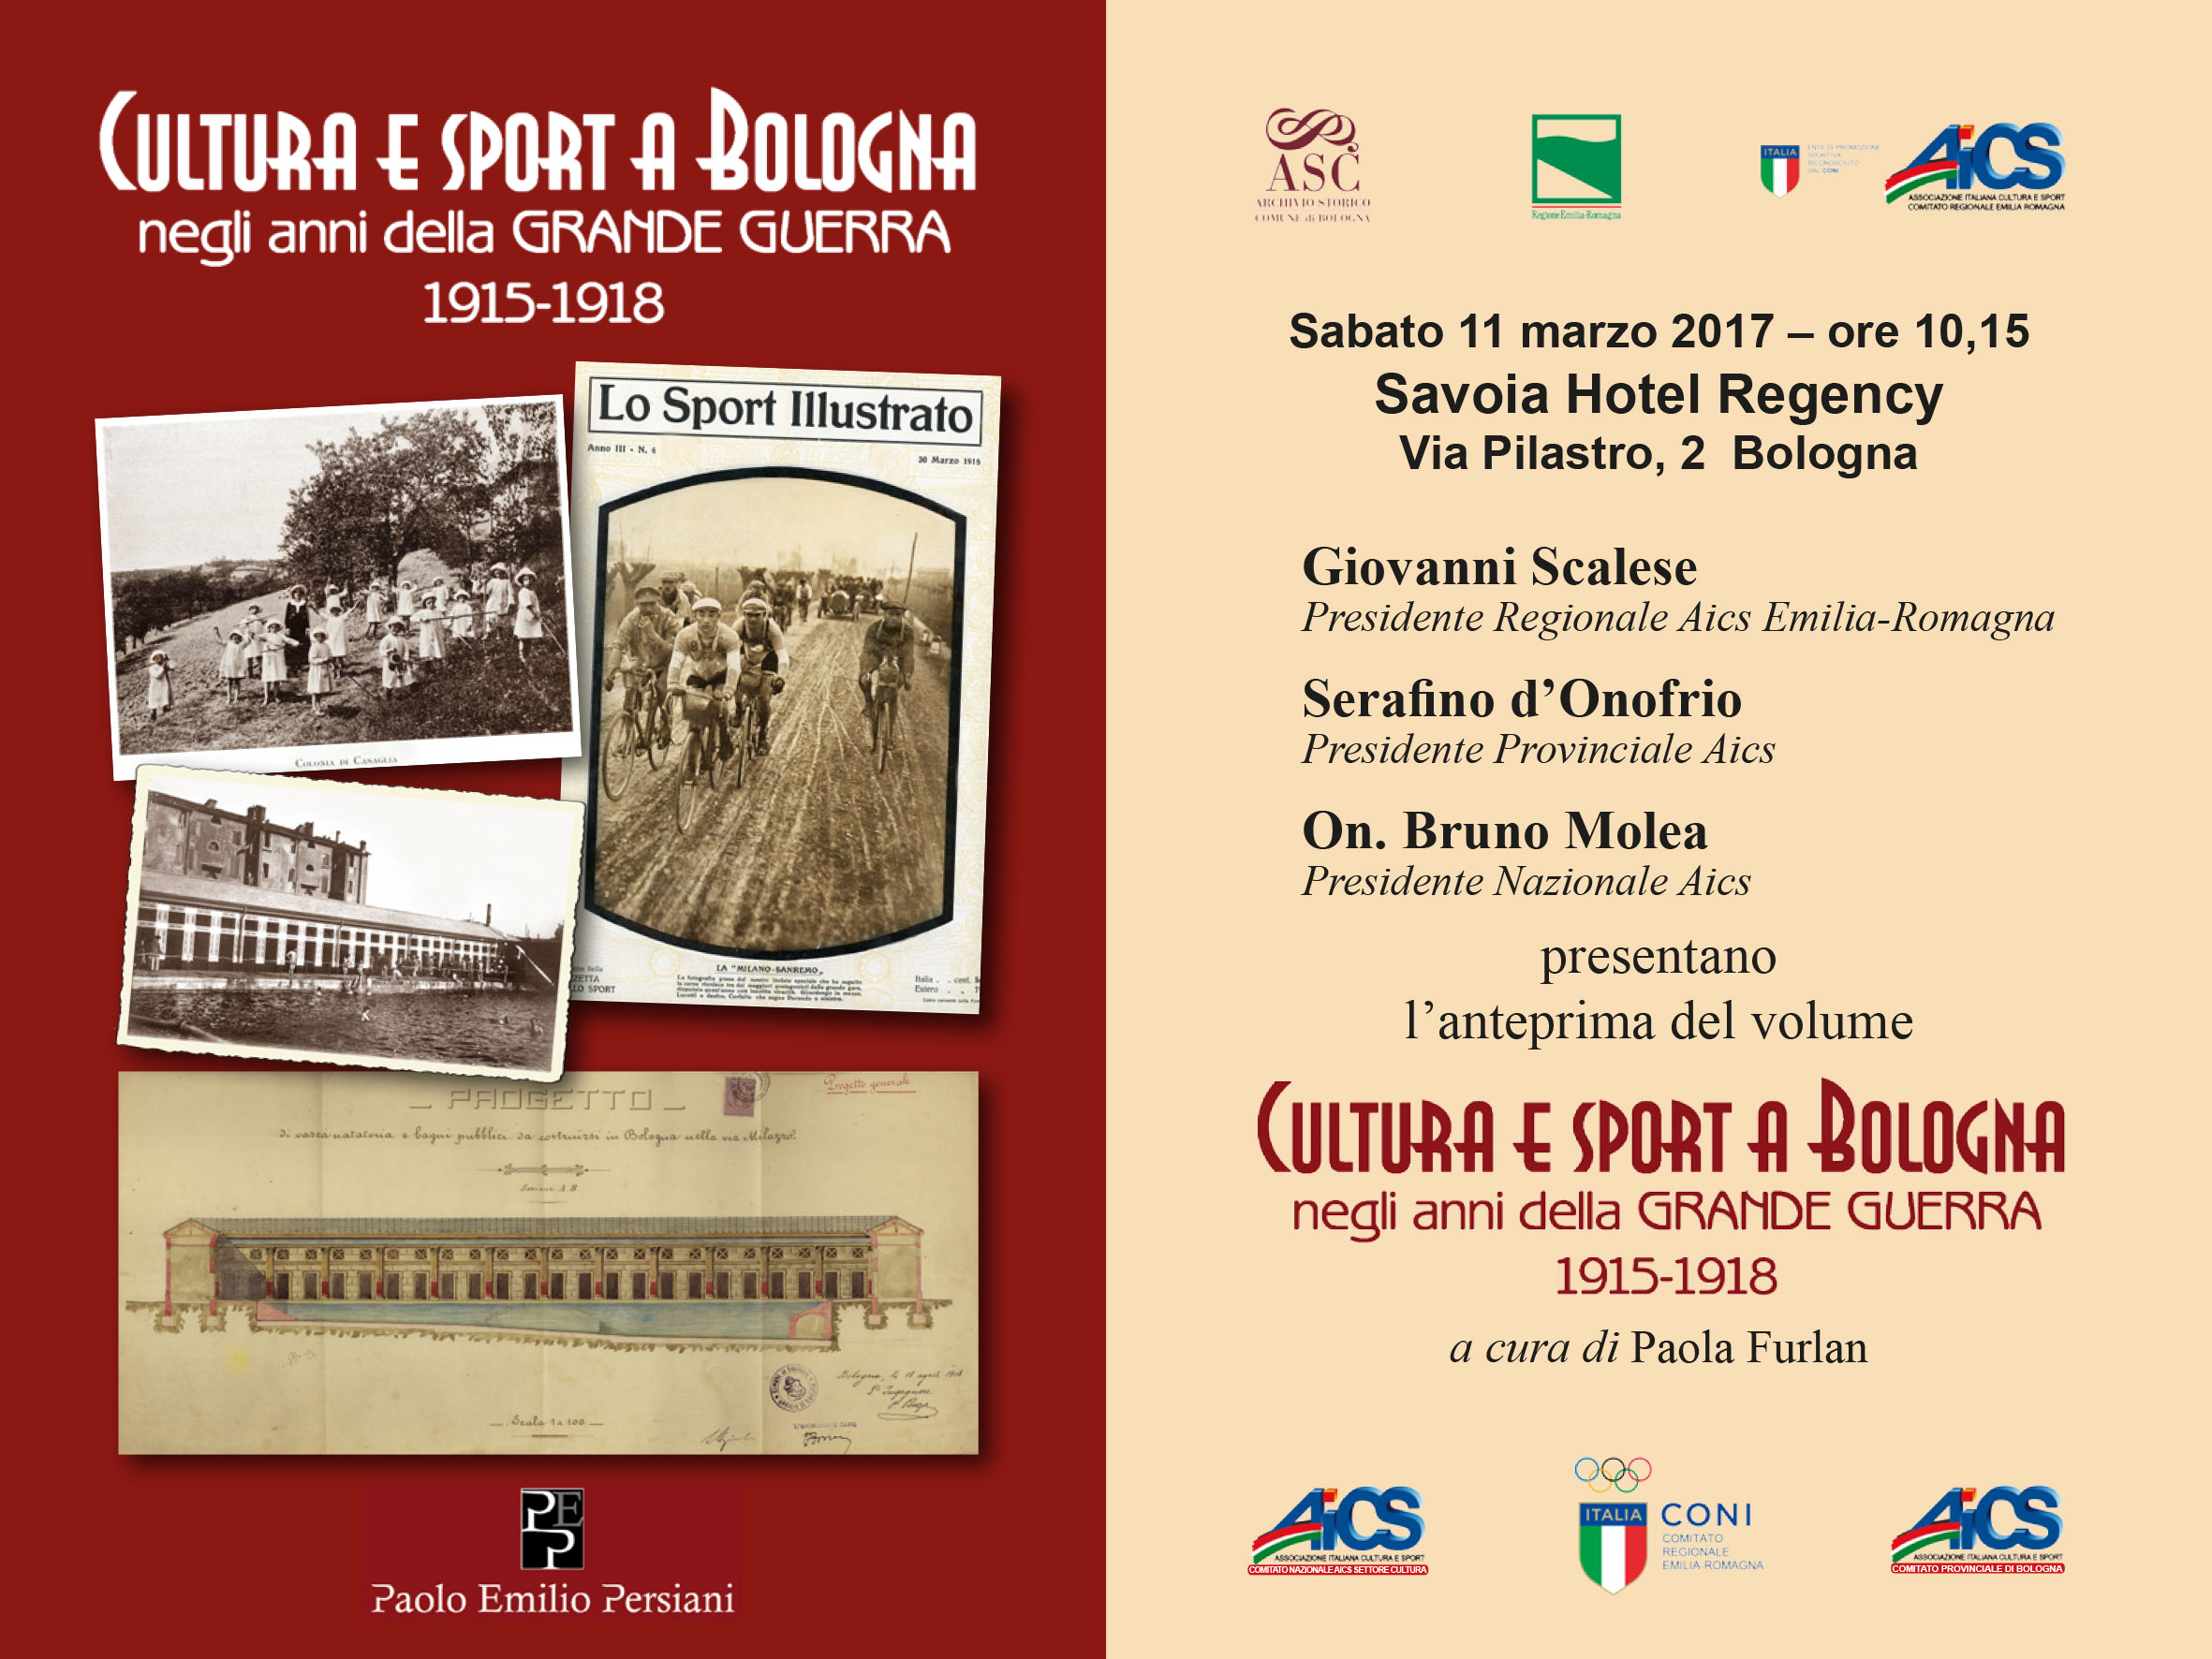 Presentazione di “Cultura e Sport a Bologna negli anni della Grande guerra”